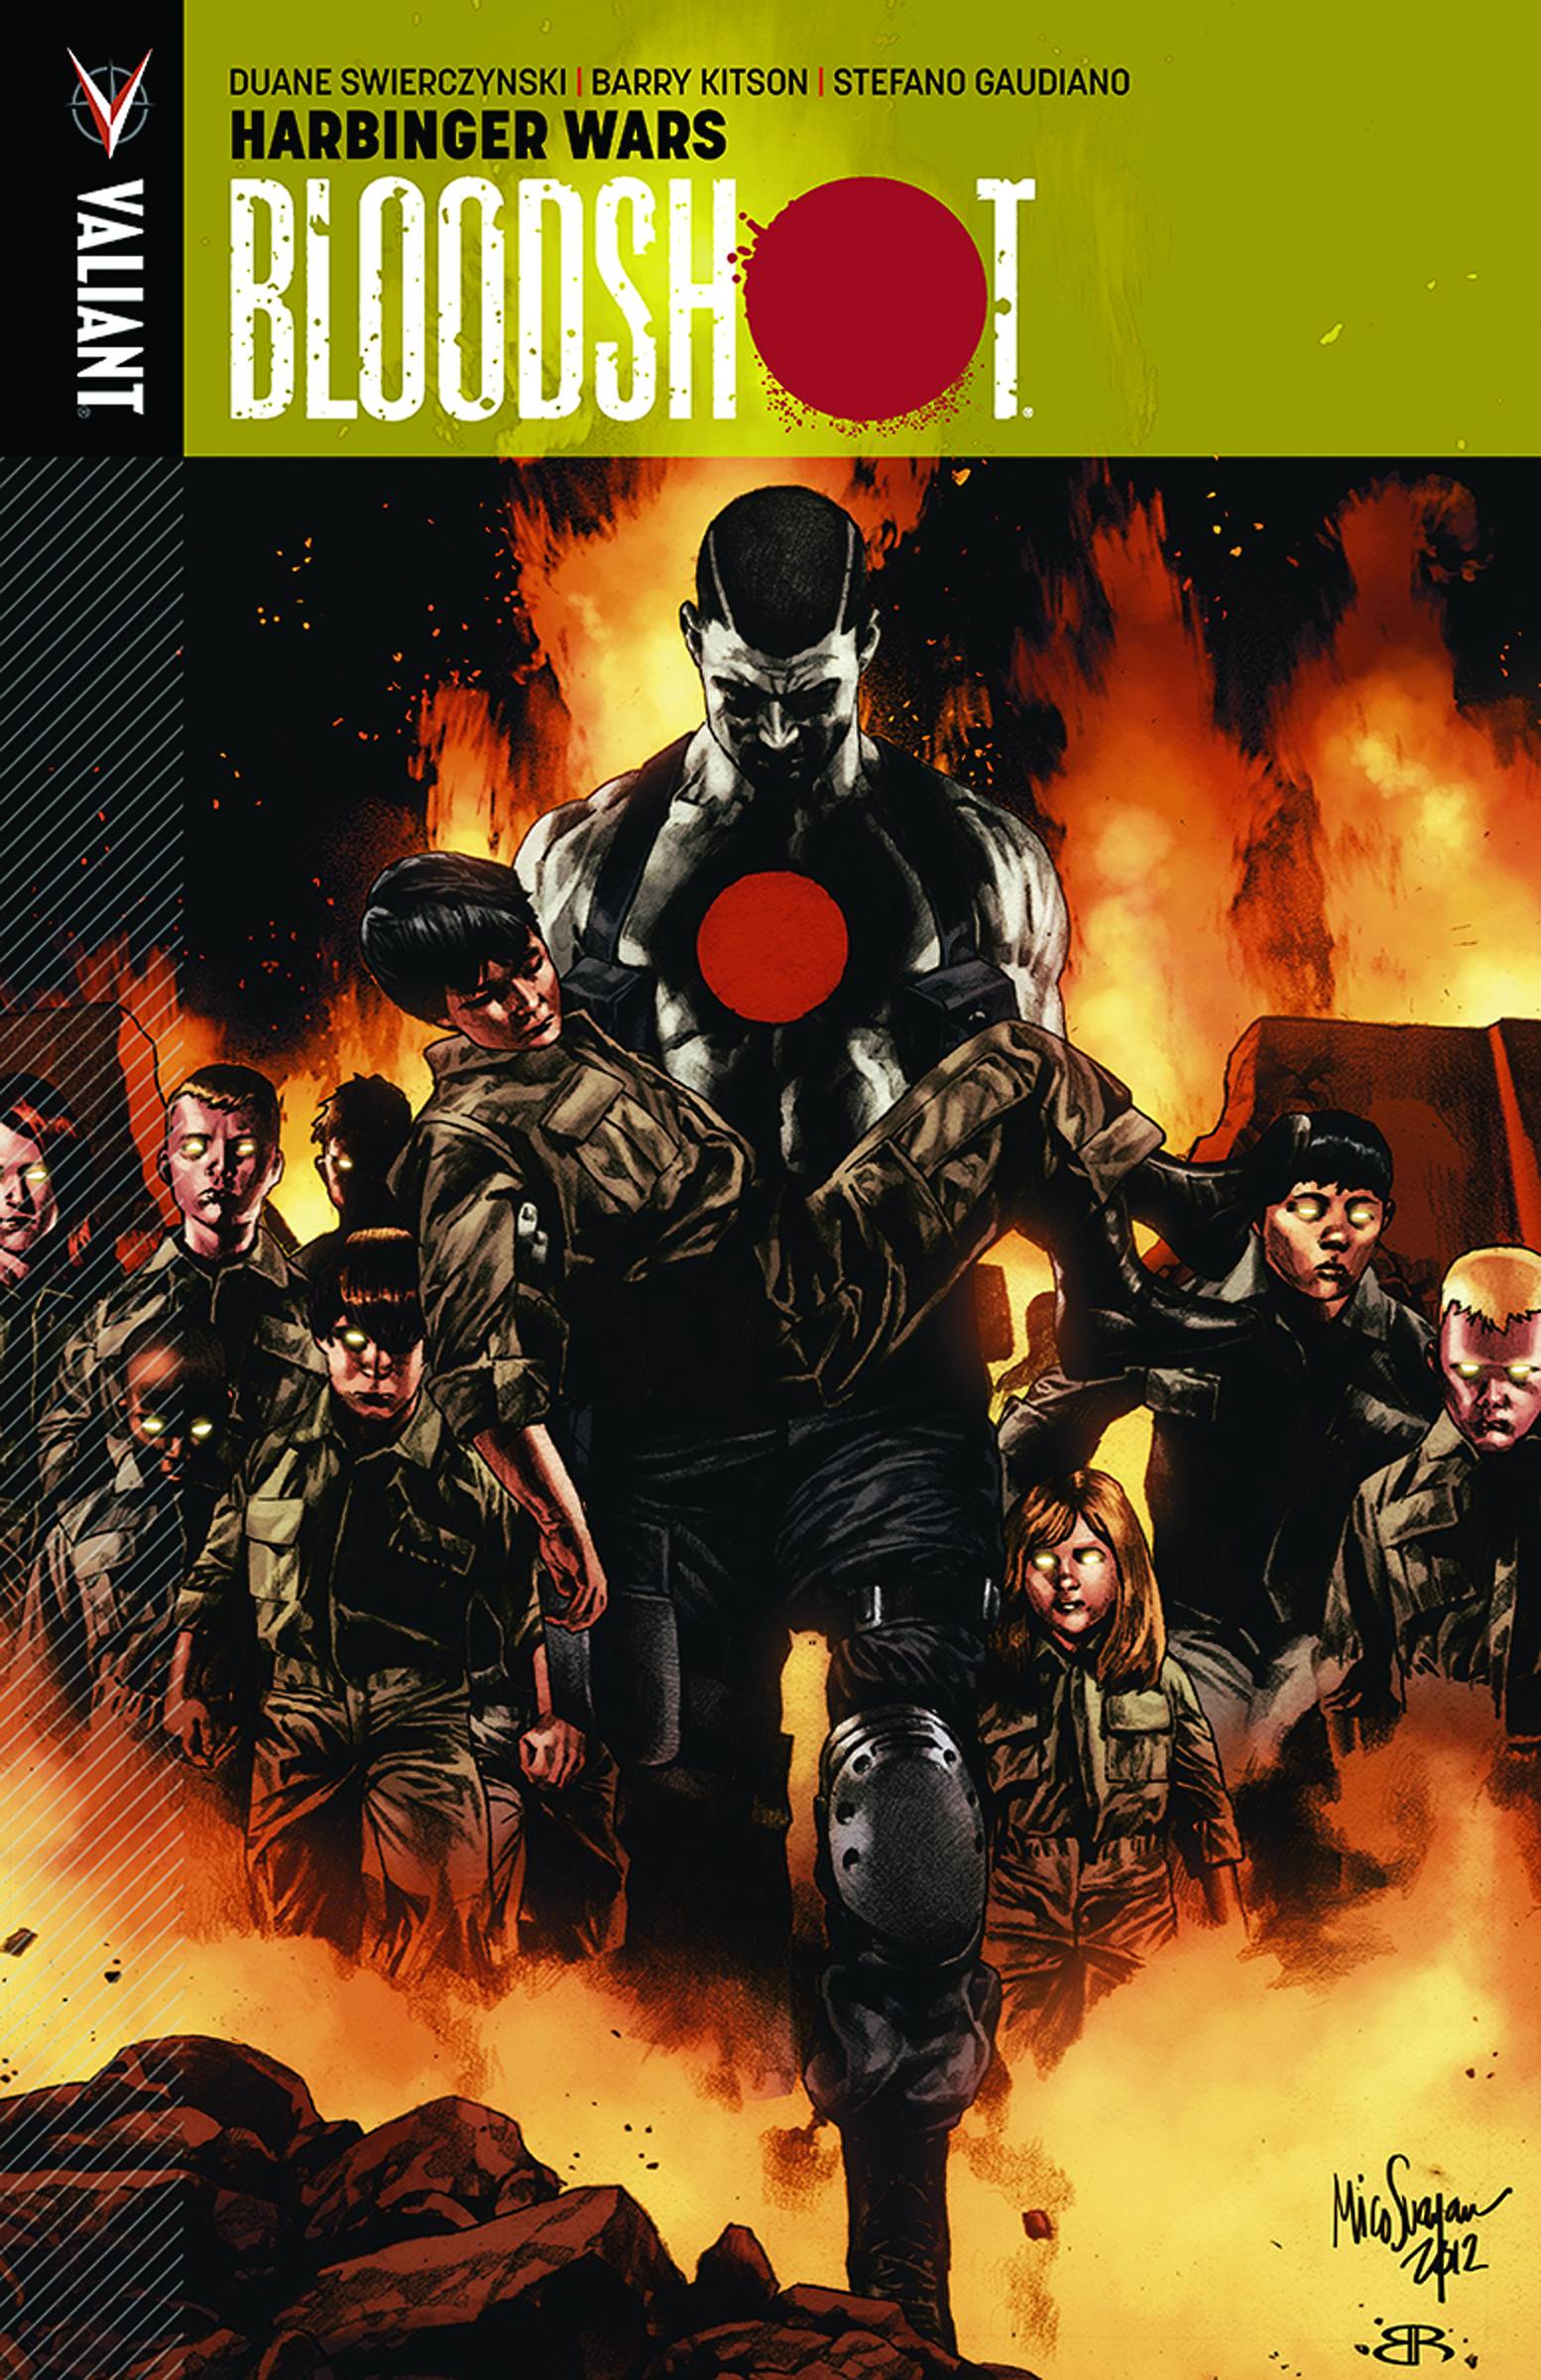 Bloodshot (Vu) Graphic Novel Volume 3 Harbinger Wars